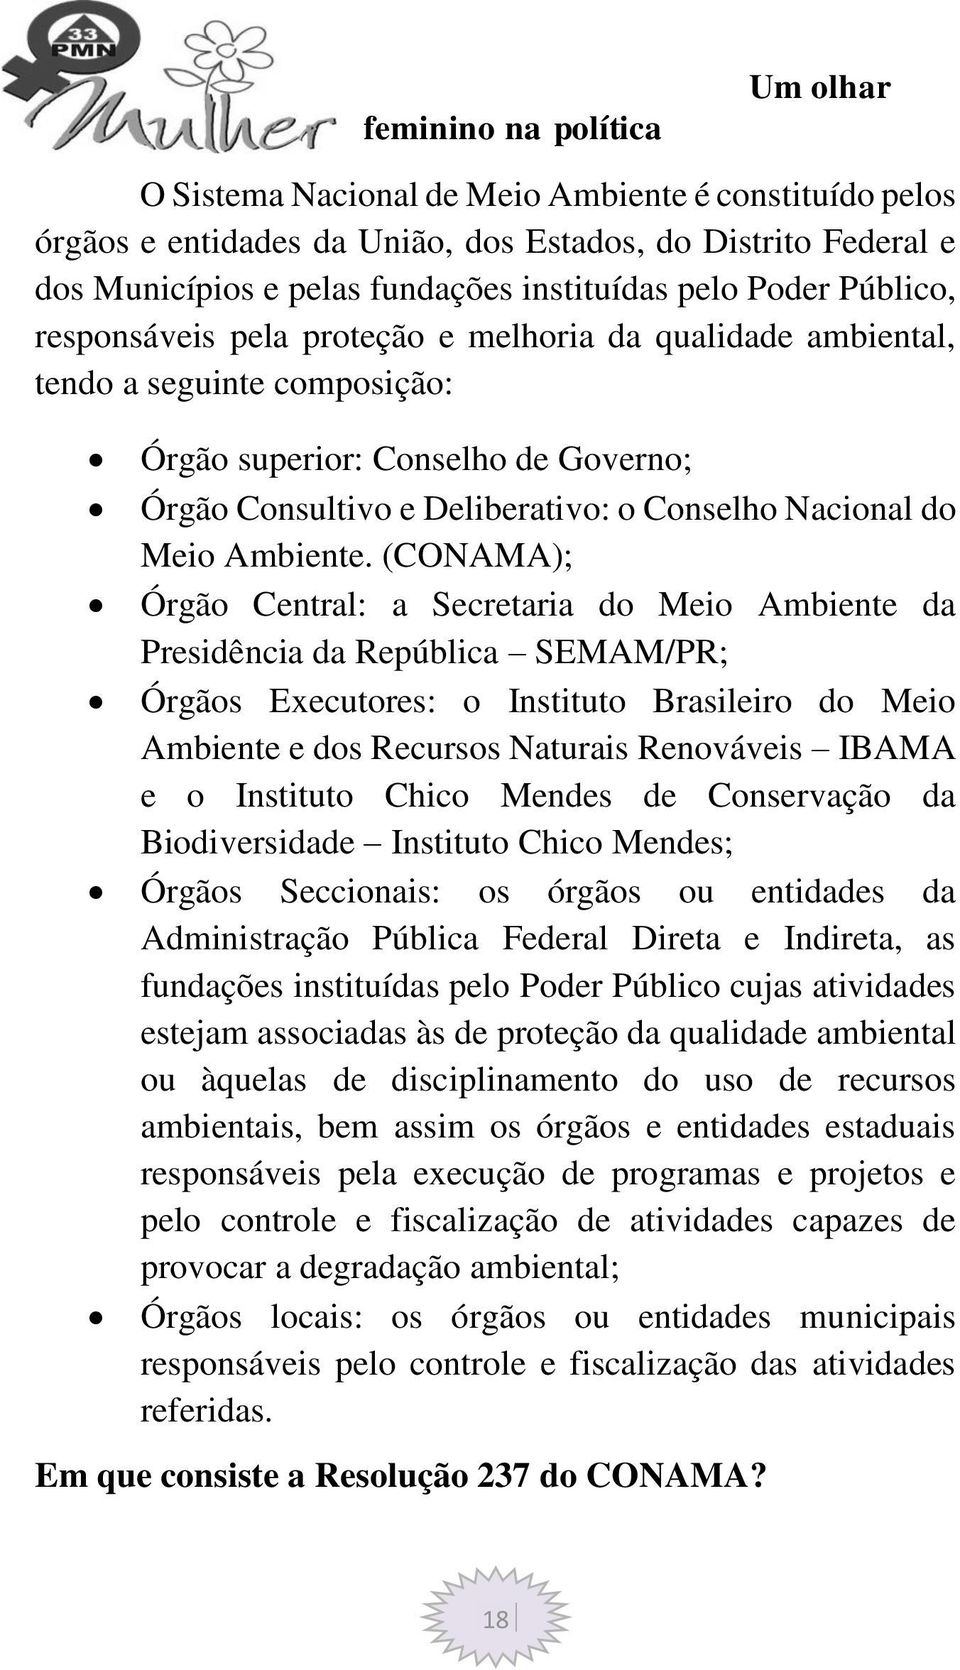 (CONAMA); Órgão Central: a Secretaria do Meio Ambiente da Presidência da República SEMAM/PR; Órgãos Executores: o Instituto Brasileiro do Meio Ambiente e dos Recursos Naturais Renováveis IBAMA e o